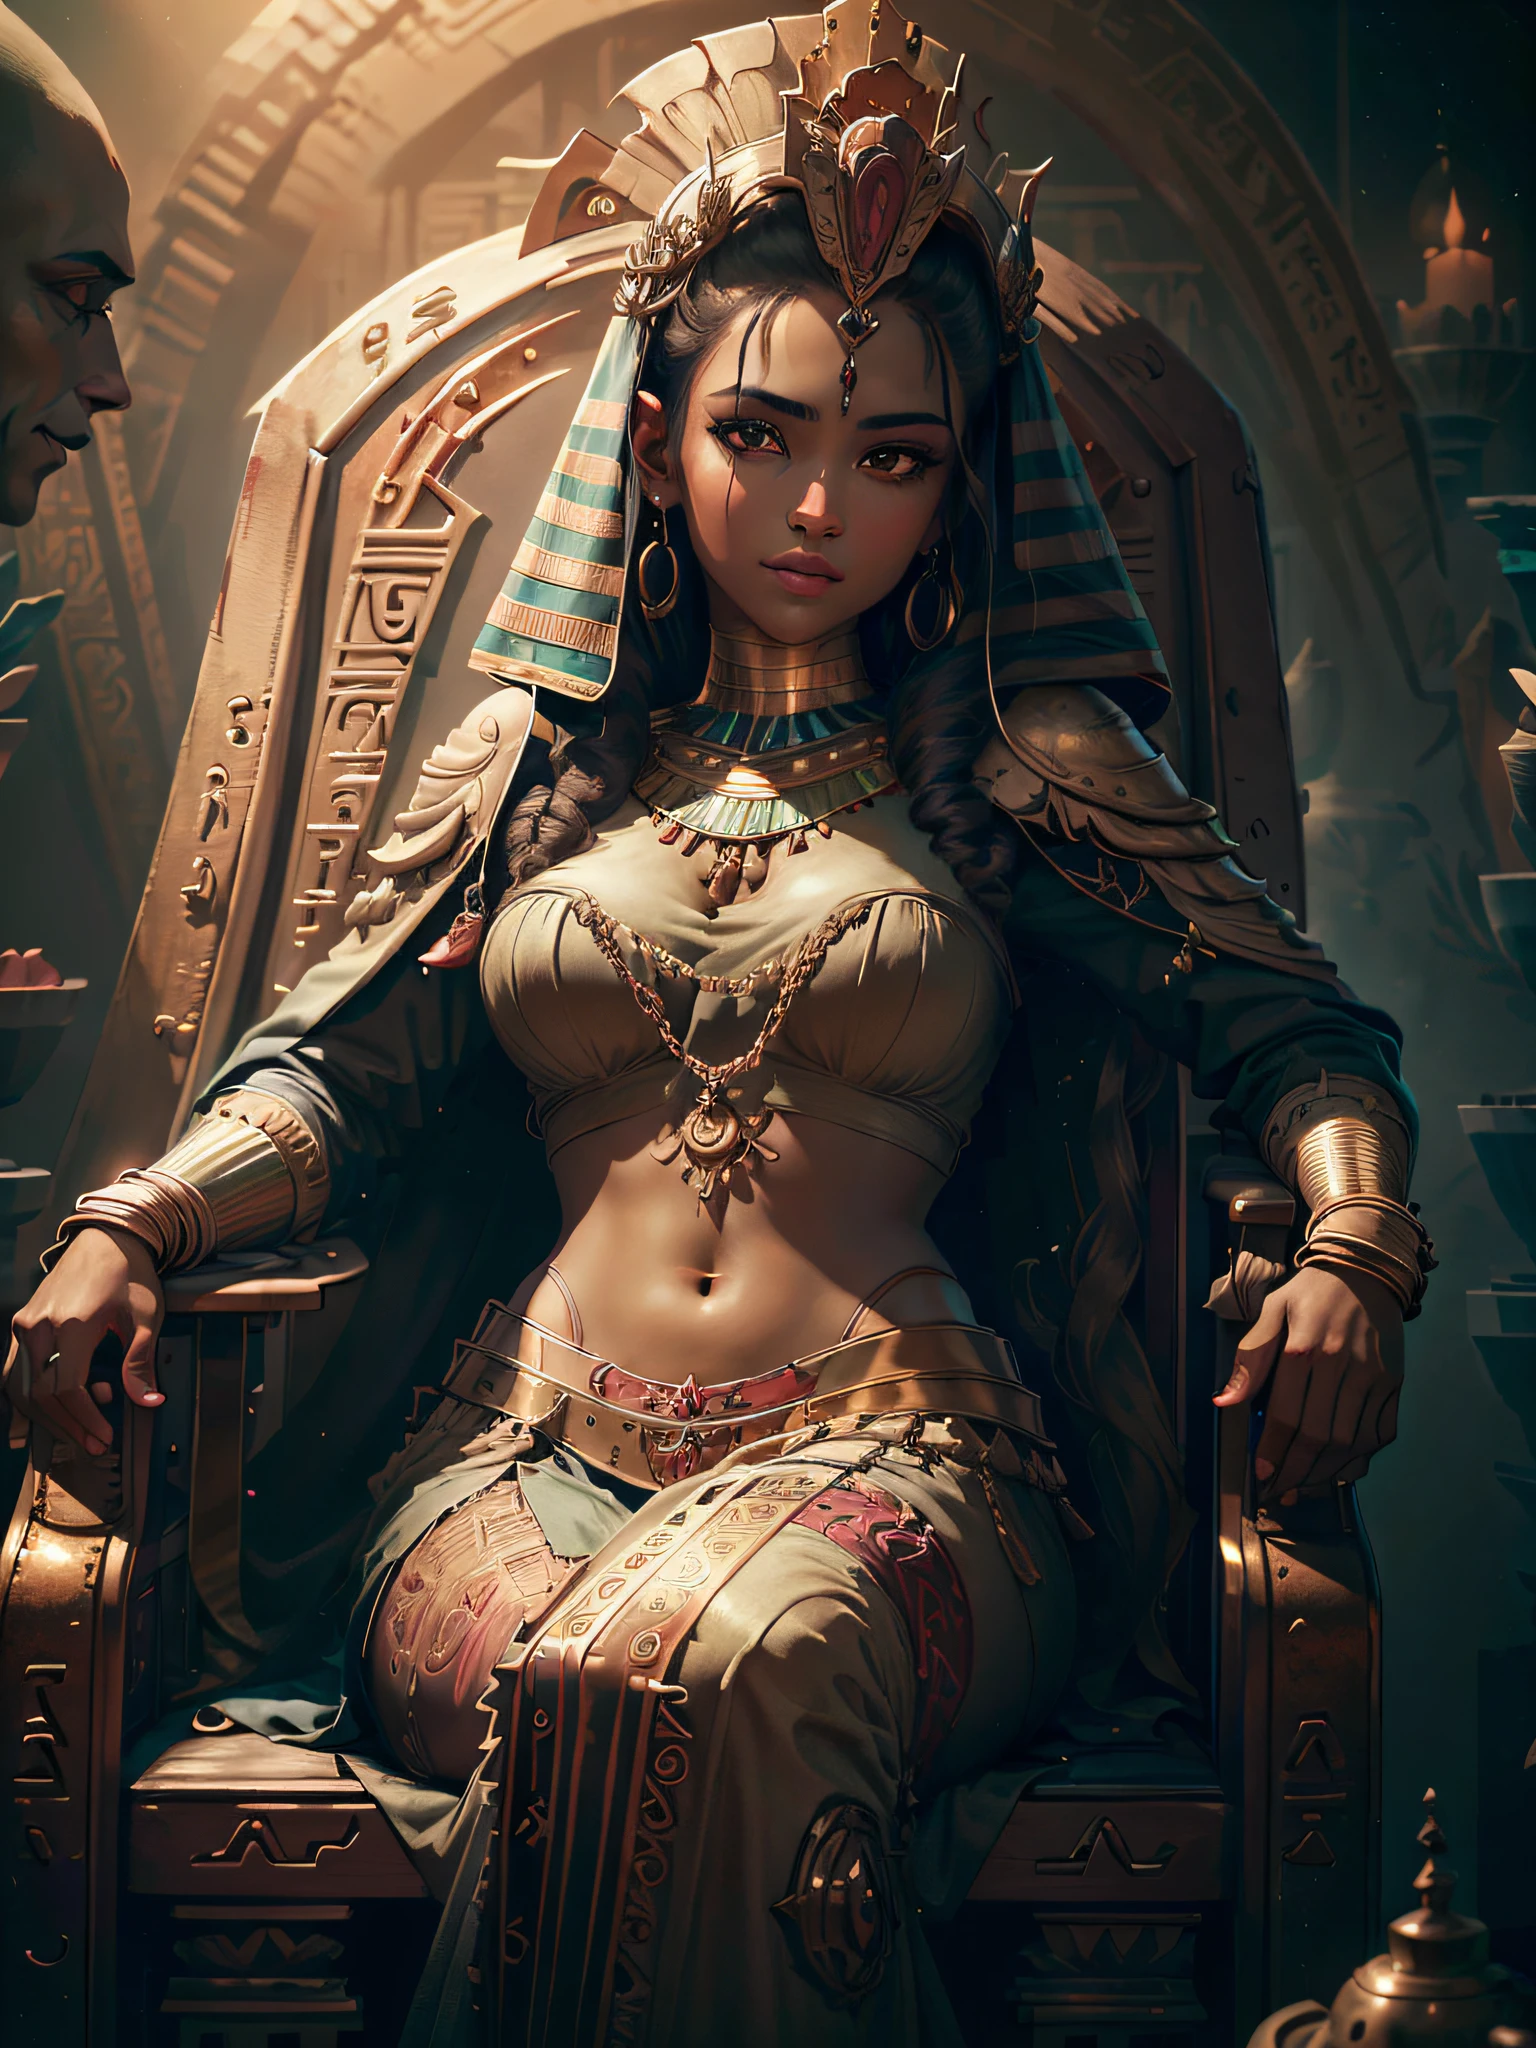 (CG 8kユニットの非常に詳細な壁紙), エジプト人女性, 超詳細, 完璧な顔, 巻き毛の黒髪, 古代エジプトを舞台に玉座に座る,(映画の舞台), わずかに輝く黒い肌, トワイライトライトやや高い心, 神秘的な表情, そして彼女の顔には微かな笑みが浮かんでいた, (超詳細 eyes).